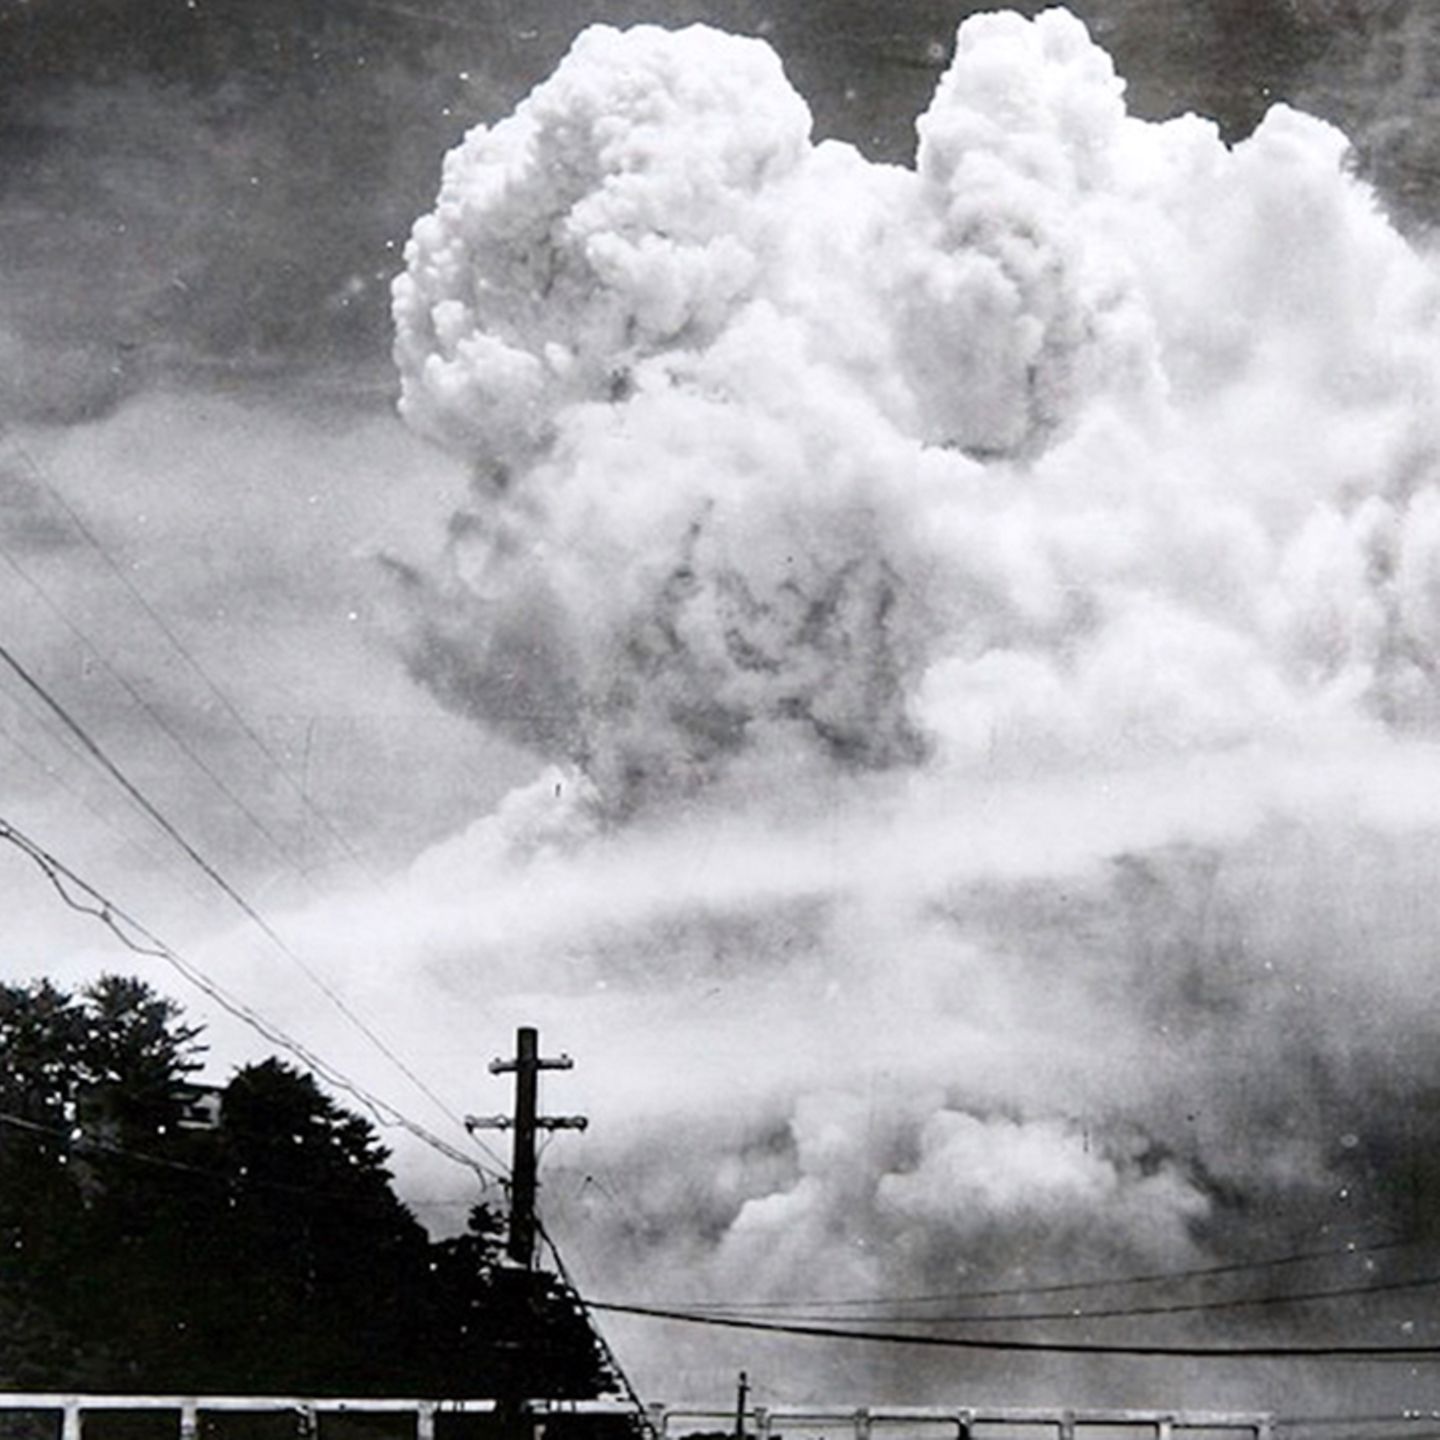 der Atombombe: Archivaufnahmen zeigen Zerstörung (Video)